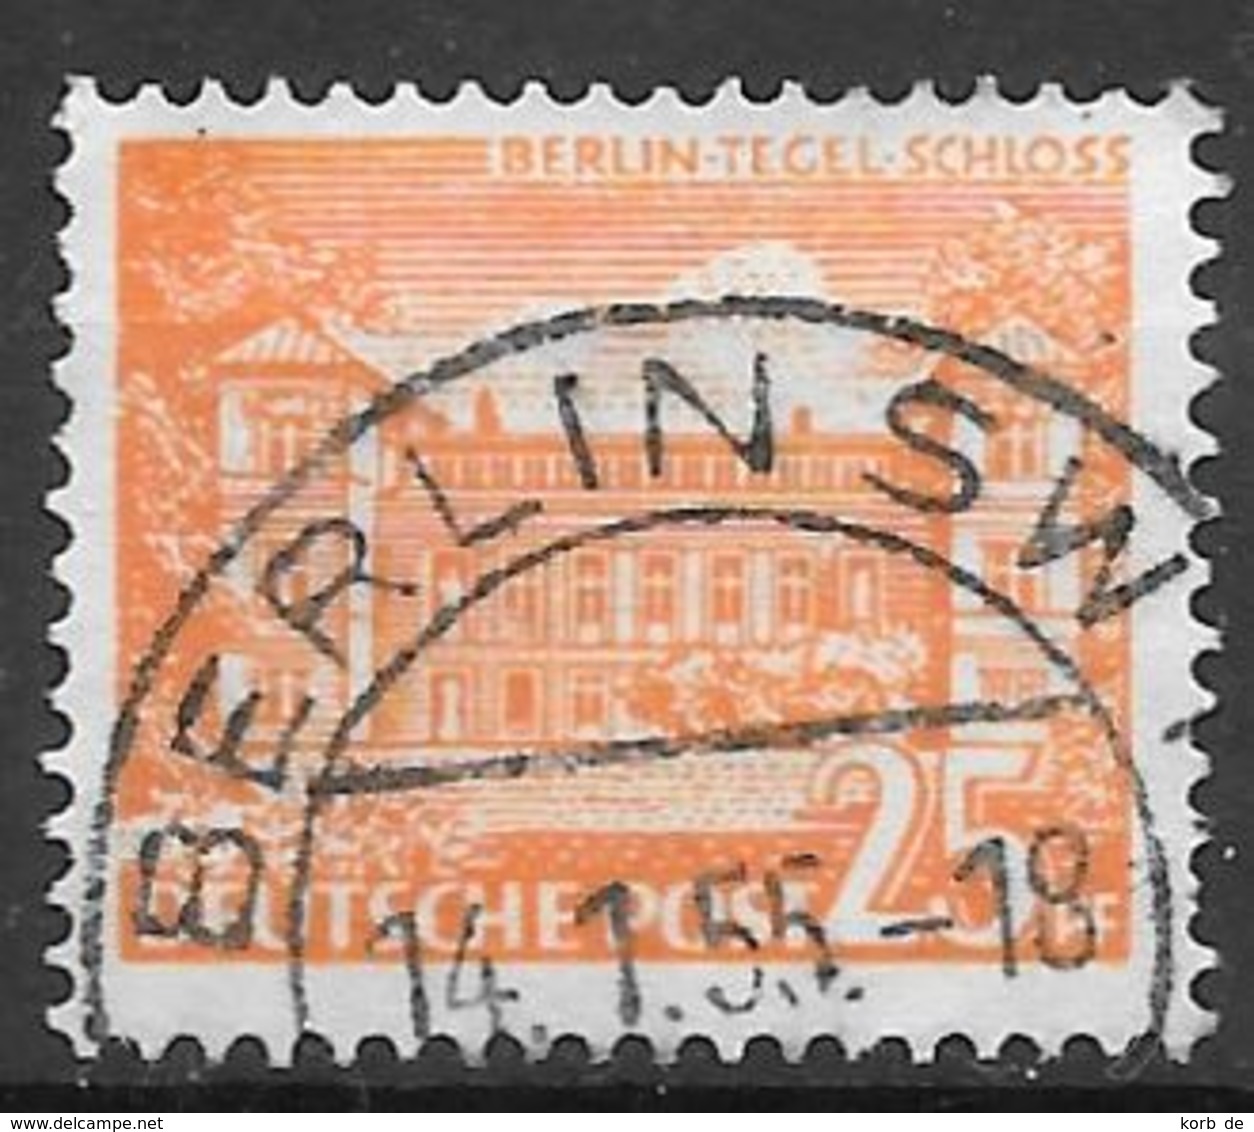 Berlin 1949 / MiNr.     50   Stempel   14.01.1955     O / Used  (f2058) - Gebraucht